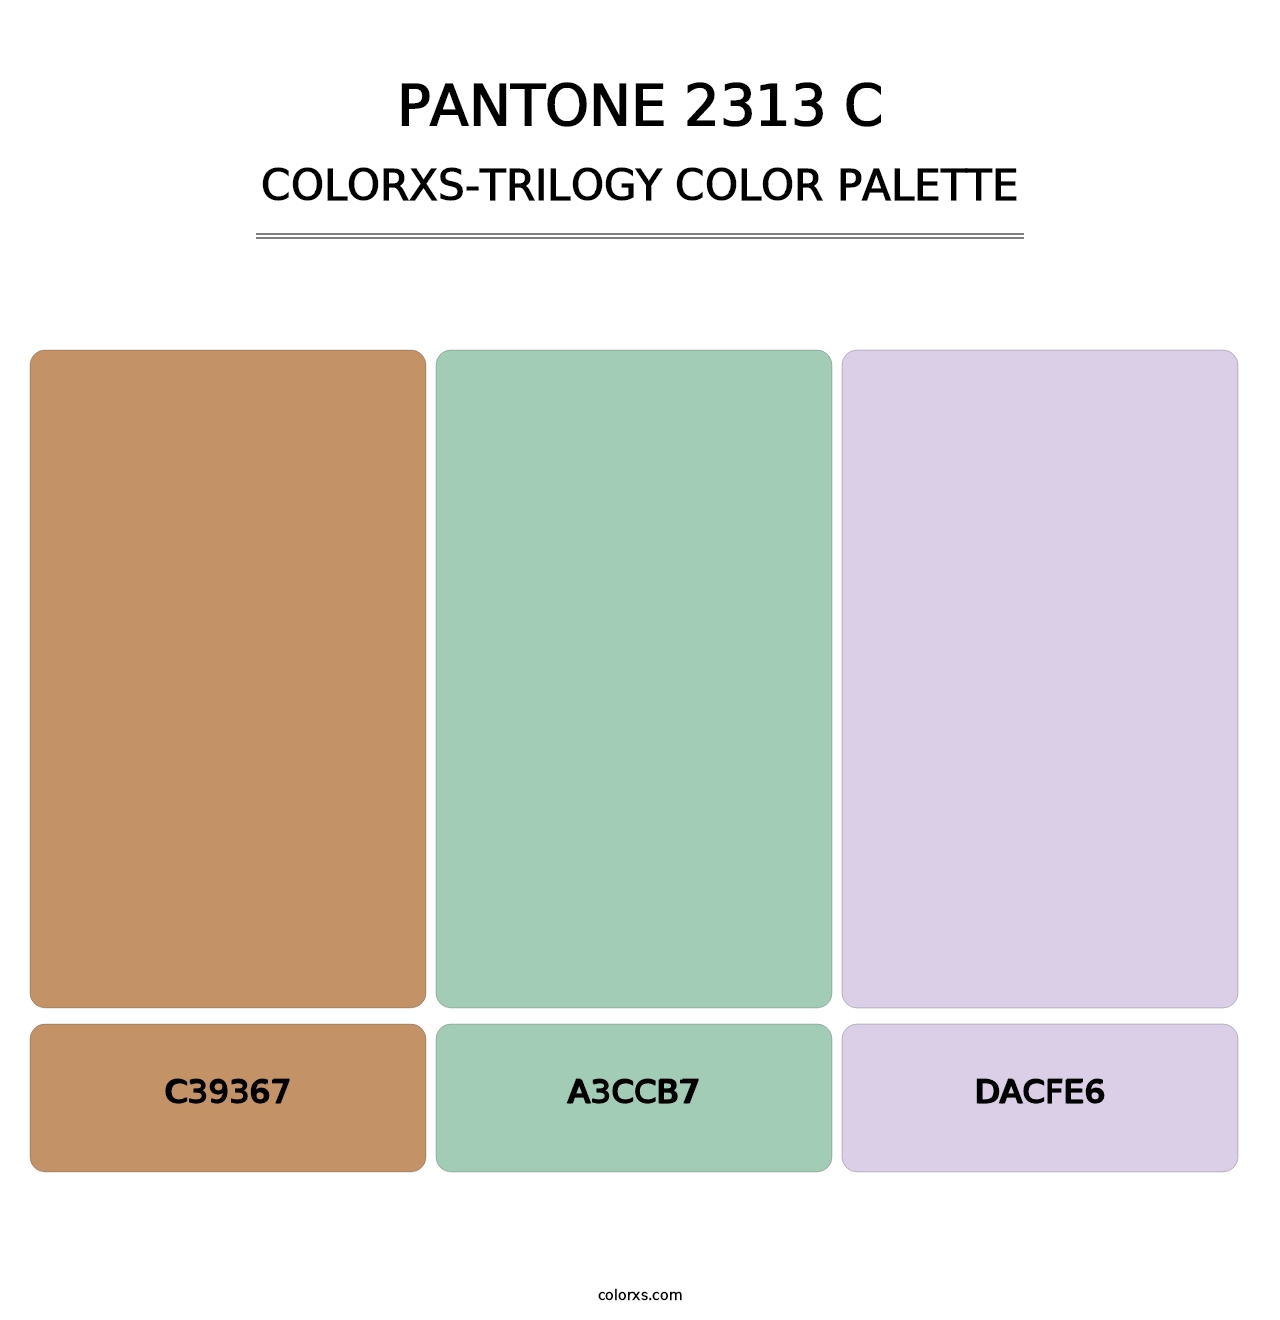 PANTONE 2313 C - Colorxs Trilogy Palette